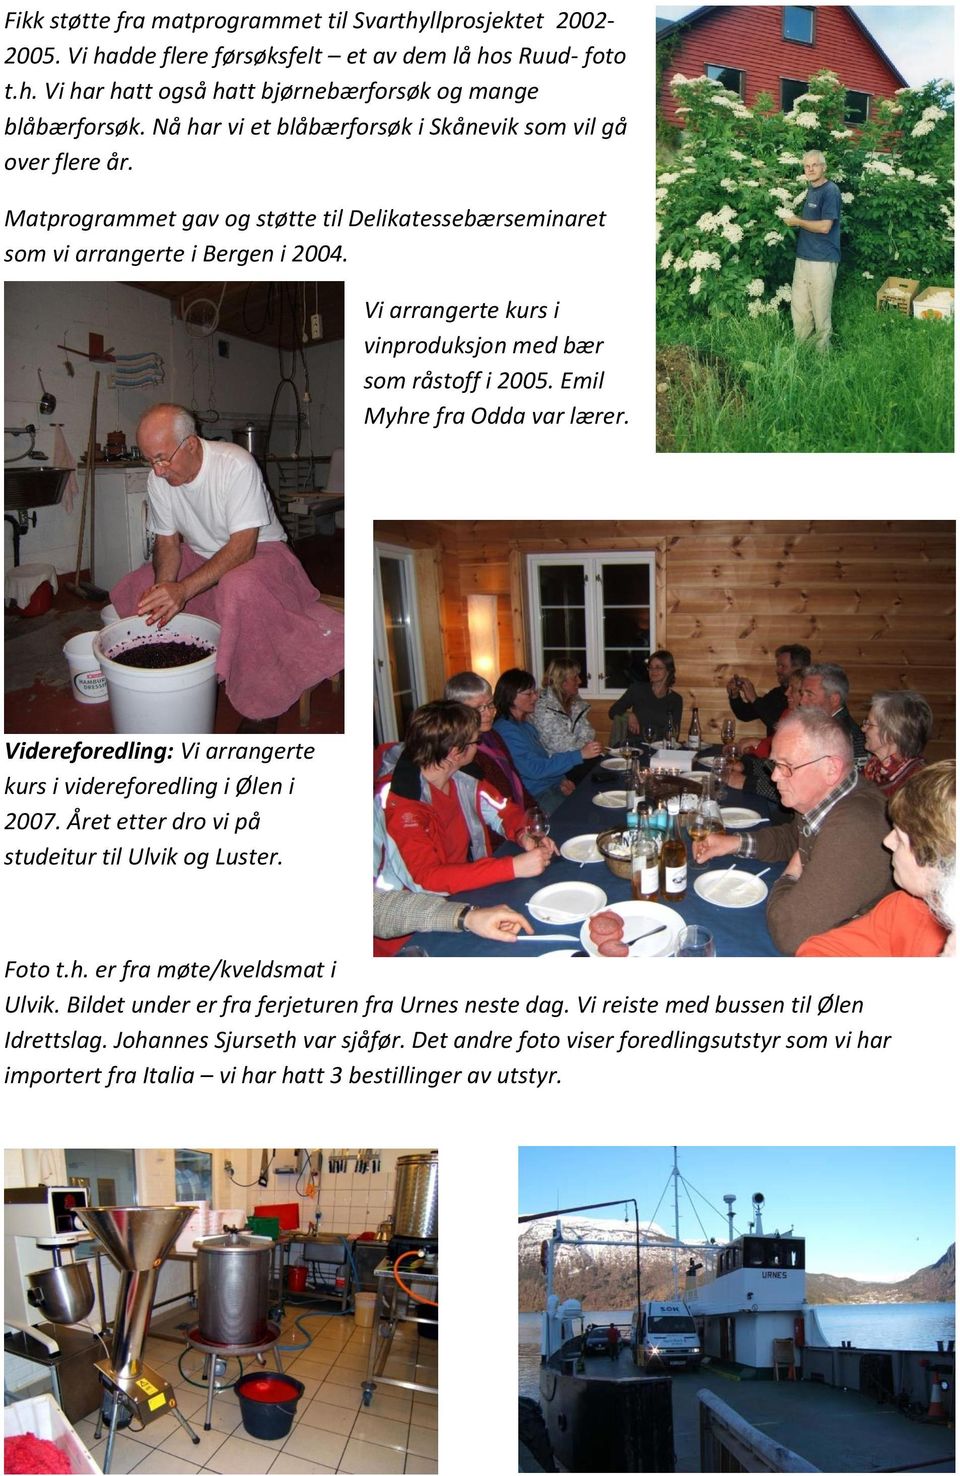 Vi arrangerte kurs i vinproduksjon med bær som råstoff i 2005. Emil Myhre fra Odda var lærer. Videreforedling: Vi arrangerte kurs i videreforedling i Ølen i 2007.